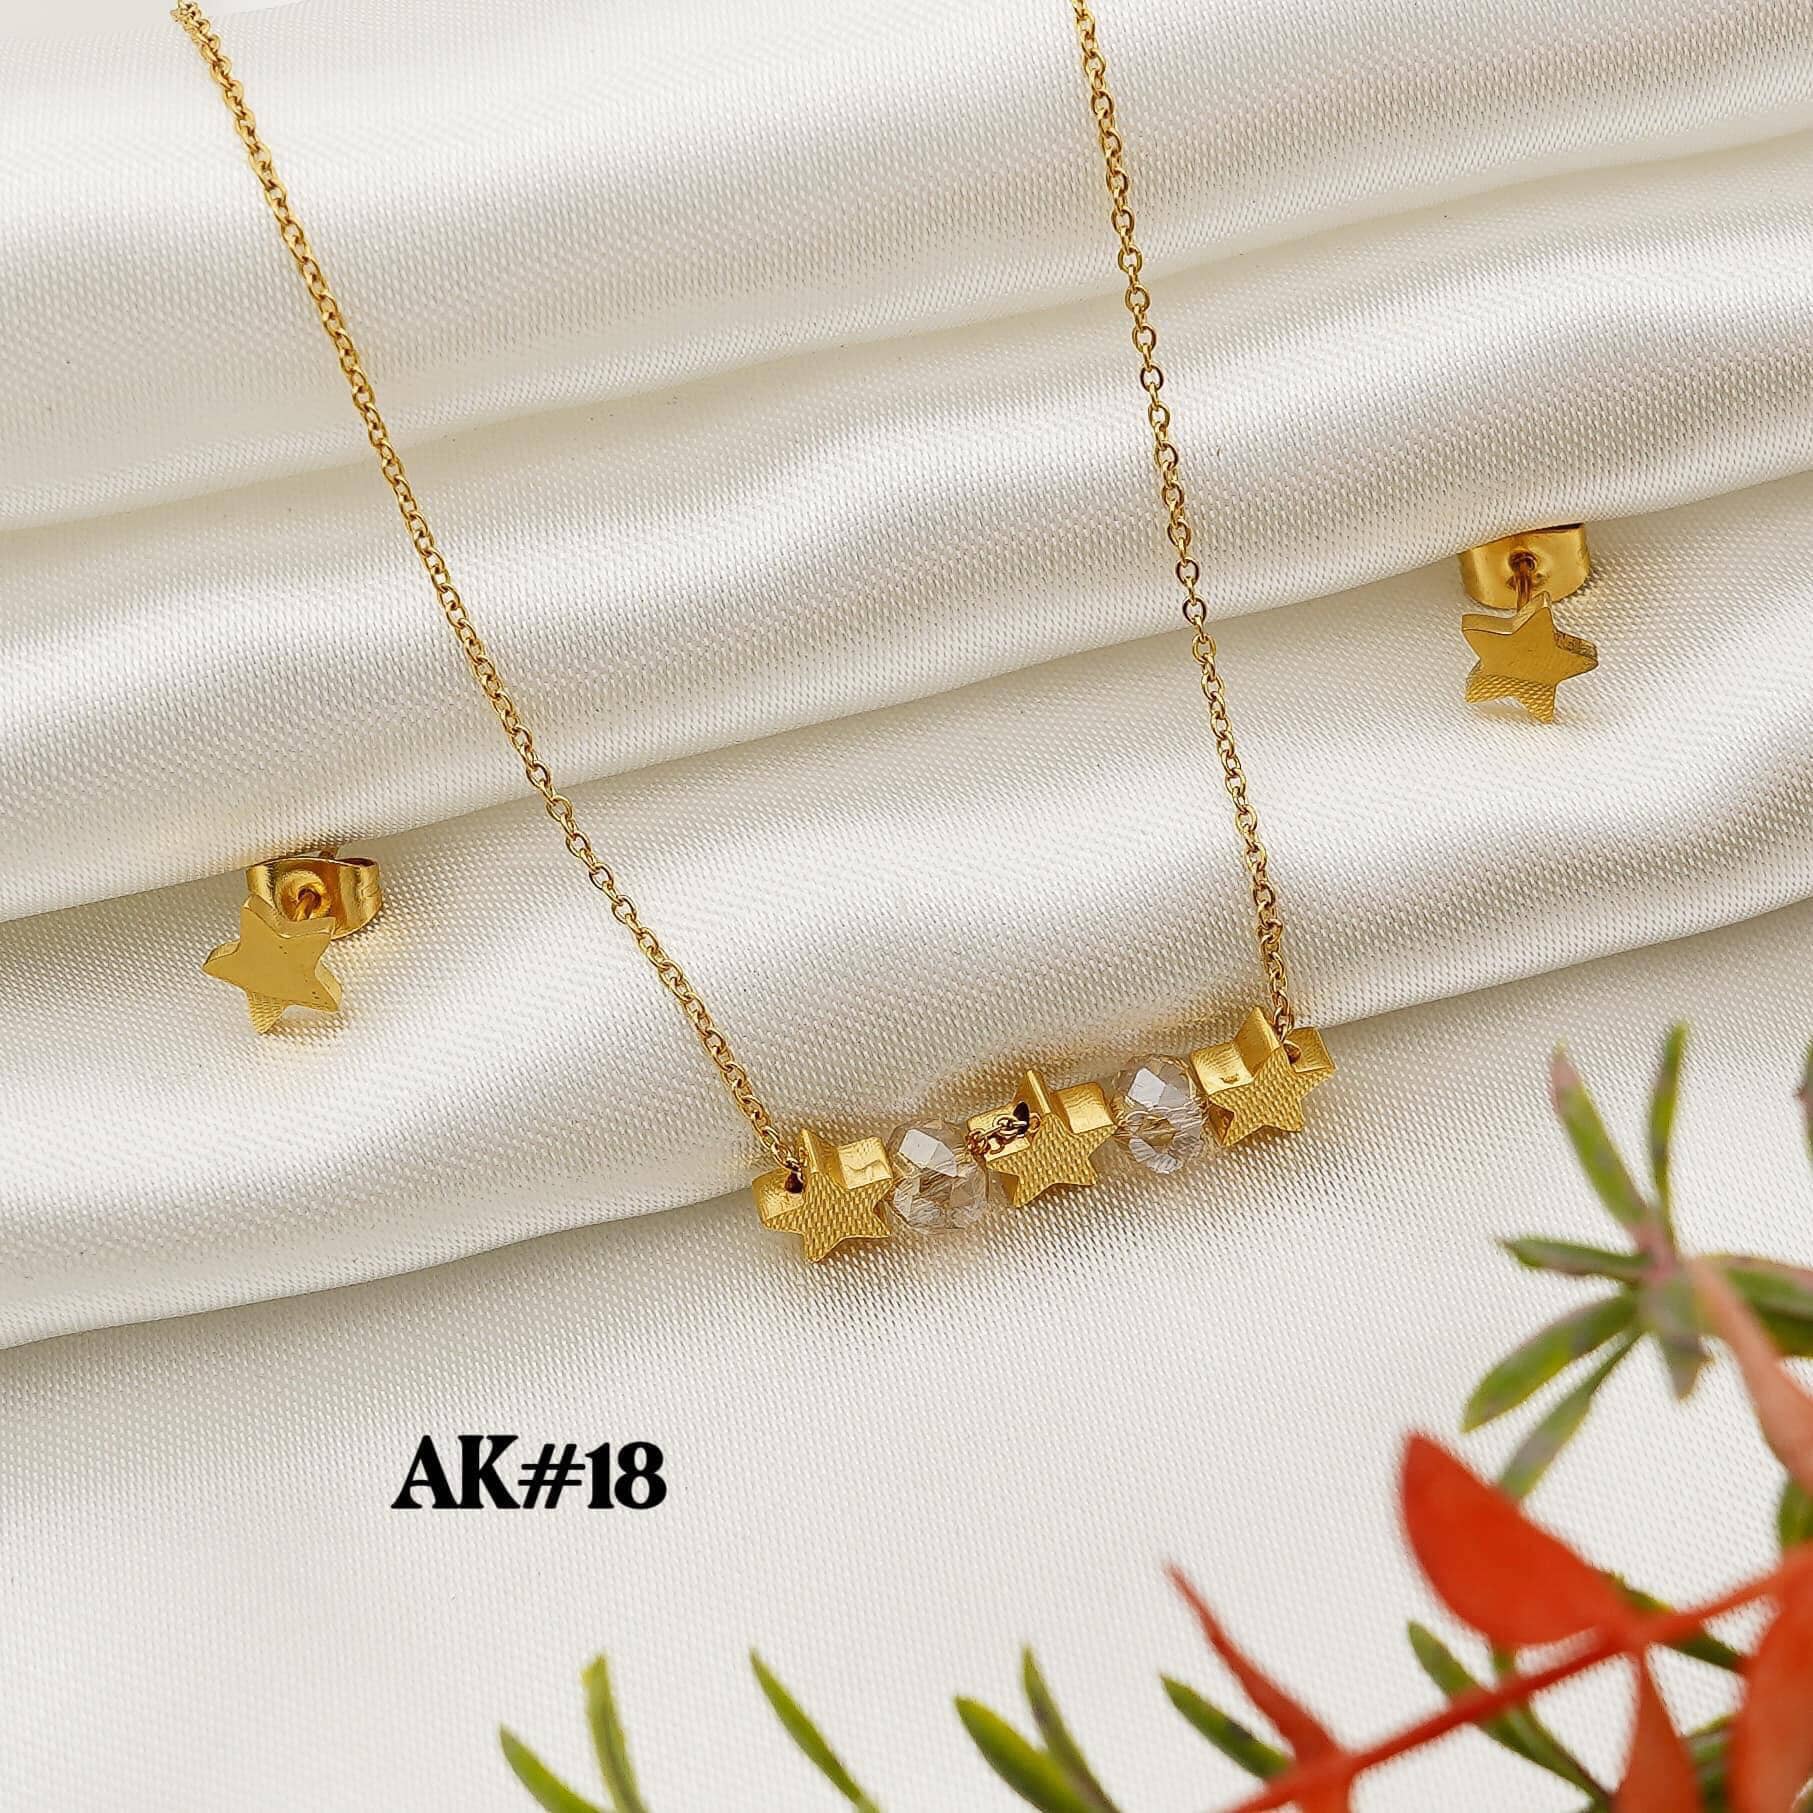 2-in-1 Jewelry Set With Box StyleMoto #AK18 